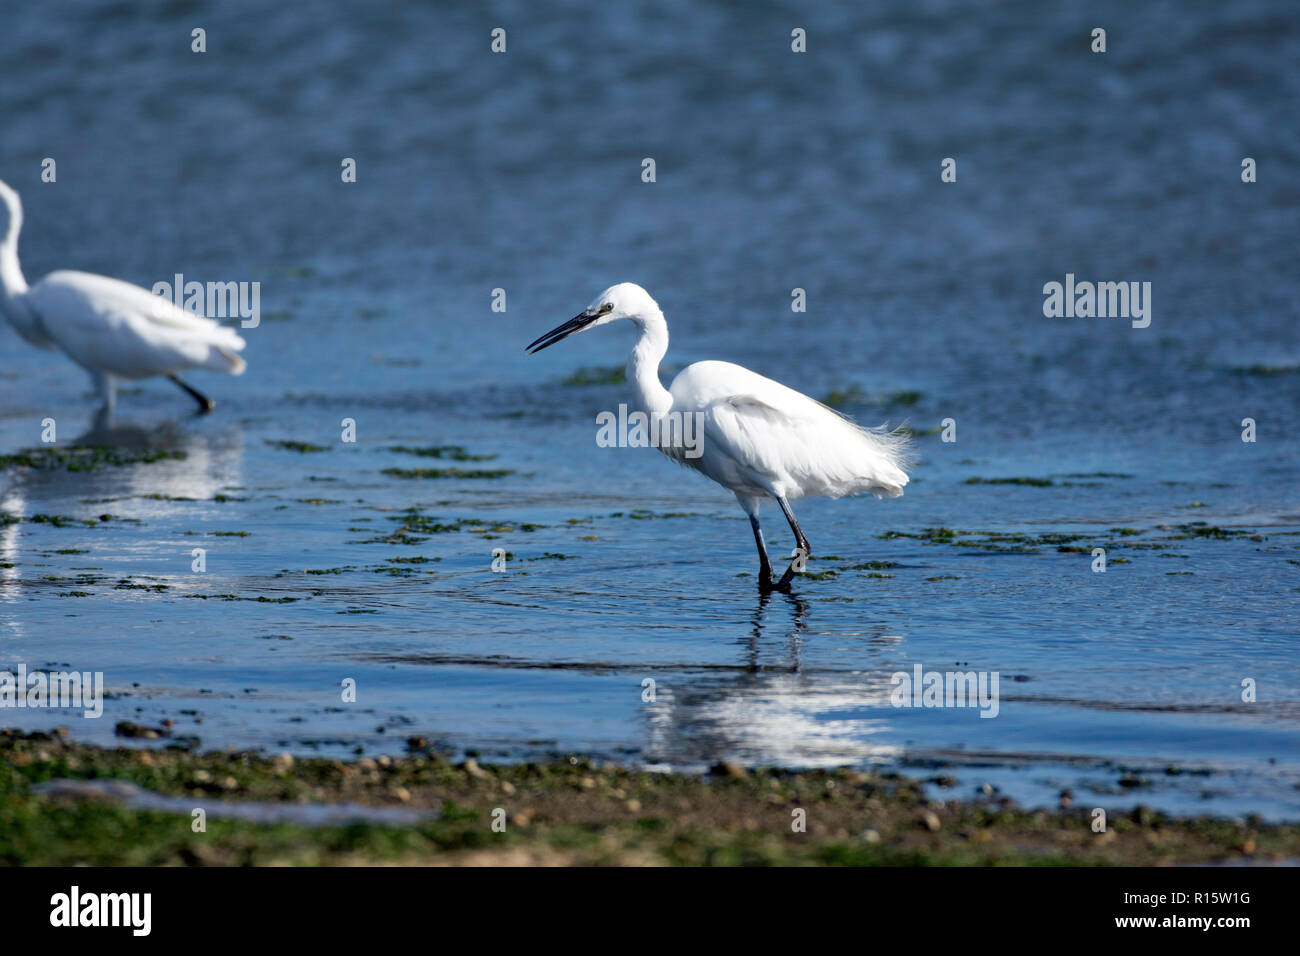 Little egret wading Stock Photo